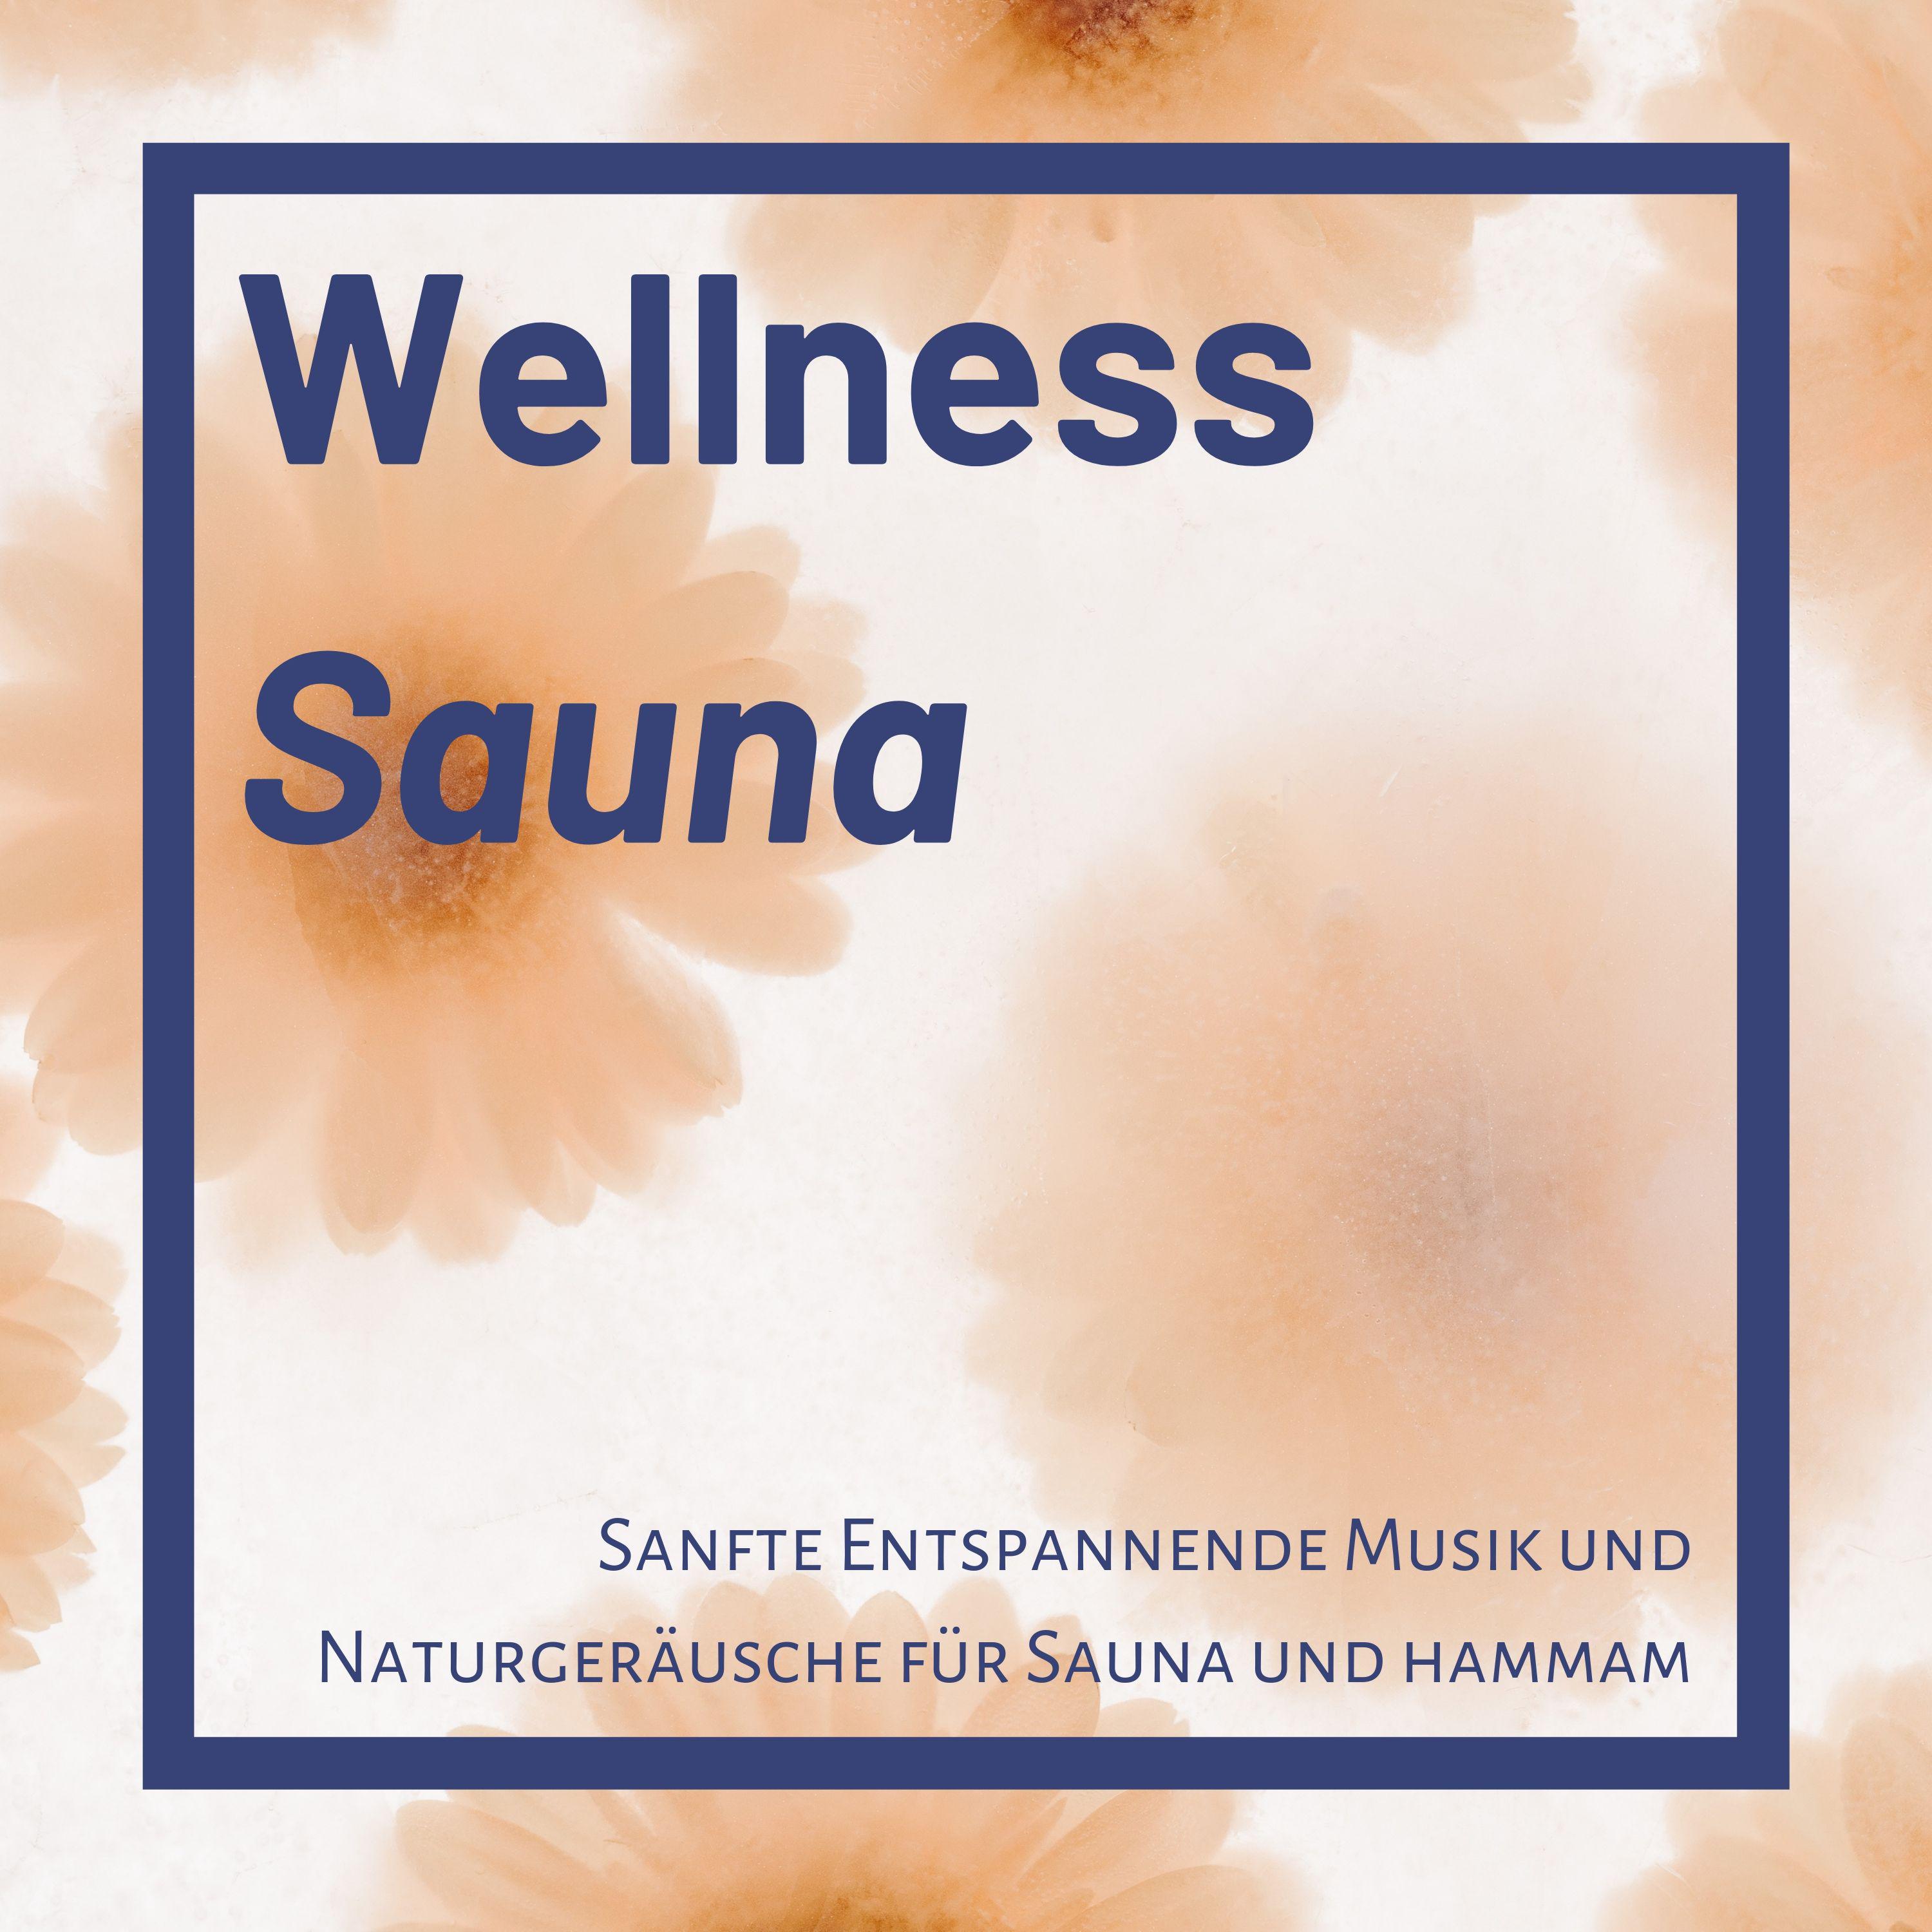 Wellness Sauna: Sanfte Entspannende Musik und Naturger usche fü r Sauna und hammam